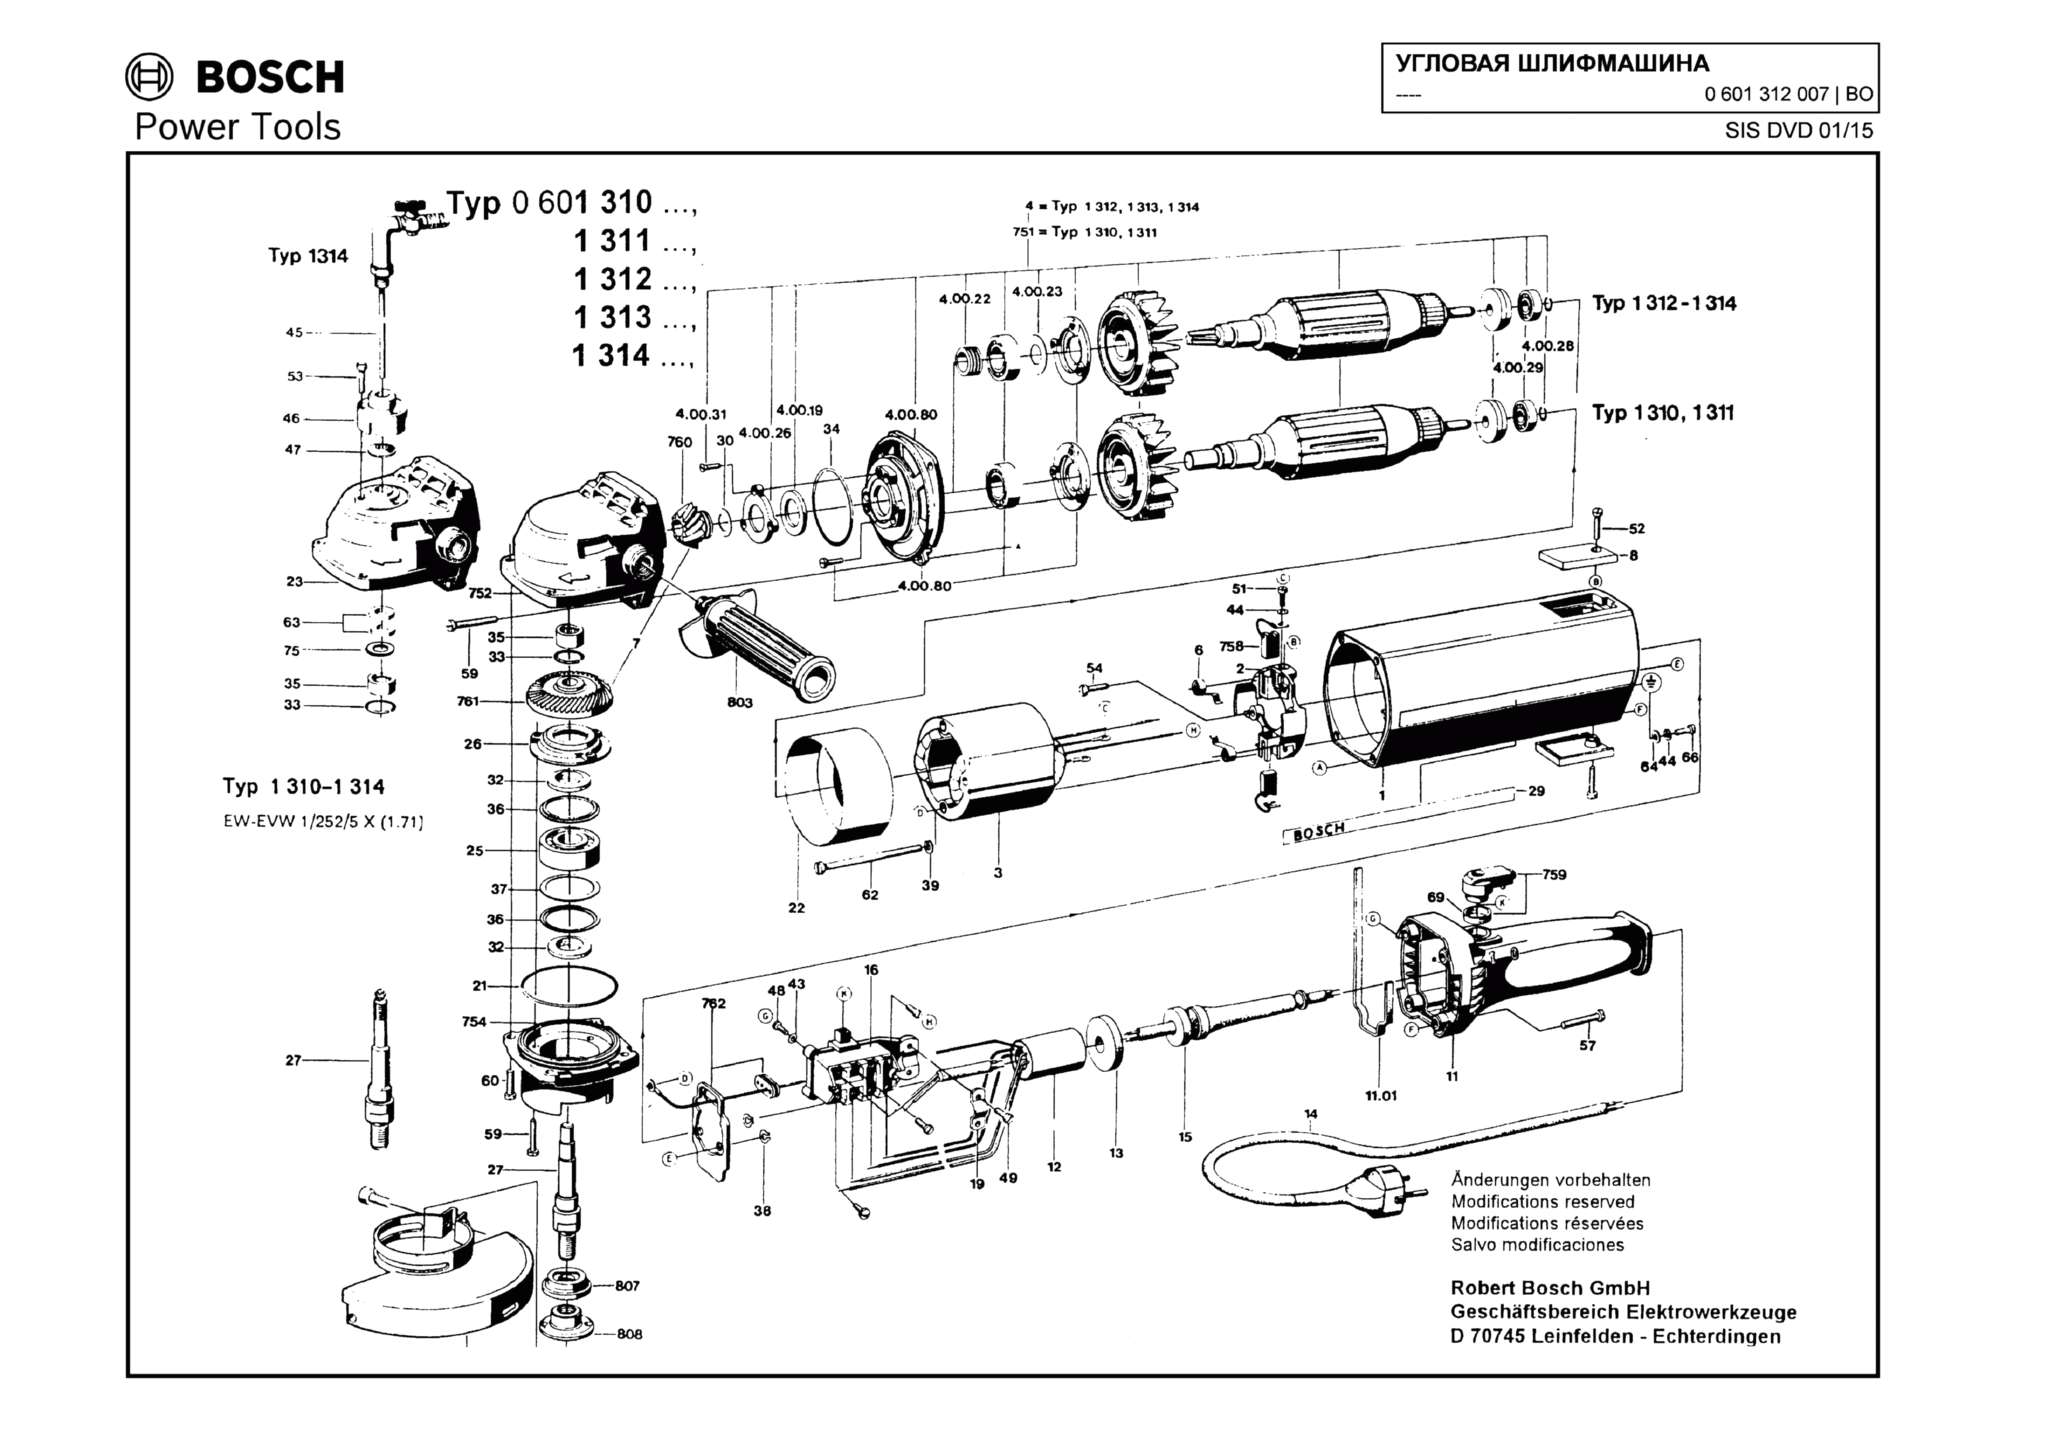 Запчасти, схема и деталировка Bosch (ТИП 0601312007)